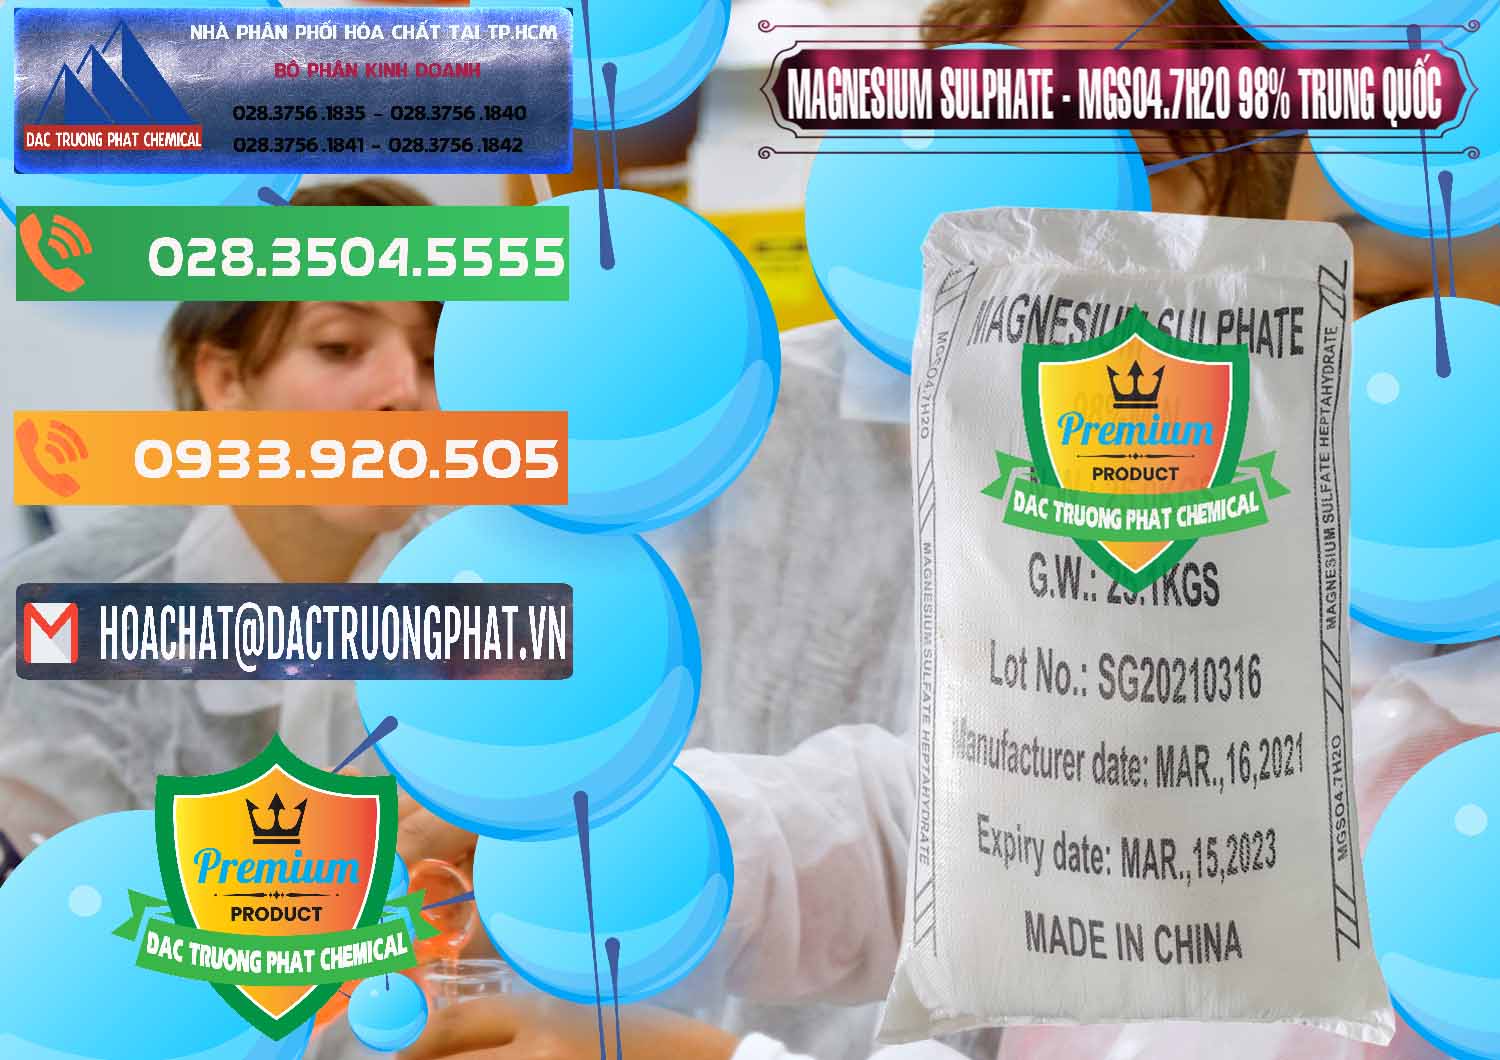 Chuyên cung ứng - bán MGSO4.7H2O – Magnesium Sulphate 98% Trung Quốc China - 0229 - Công ty chuyên cung cấp ( kinh doanh ) hóa chất tại TP.HCM - hoachatxulynuoc.com.vn